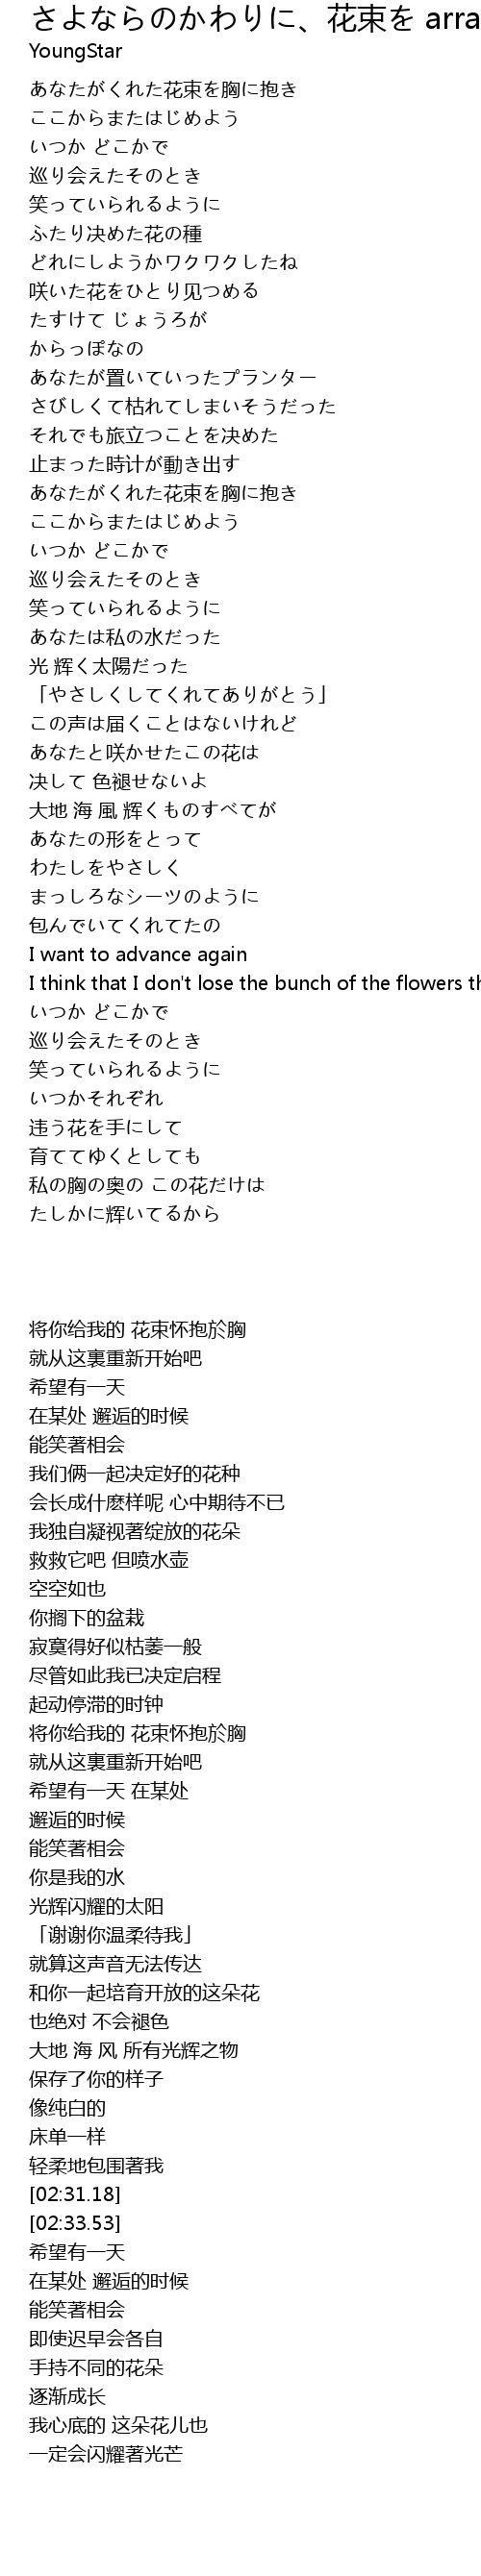 さよならのかわりに 花束を Arranged By Ichi Hua Shu Arranged By Ichi Lyrics Follow Lyrics